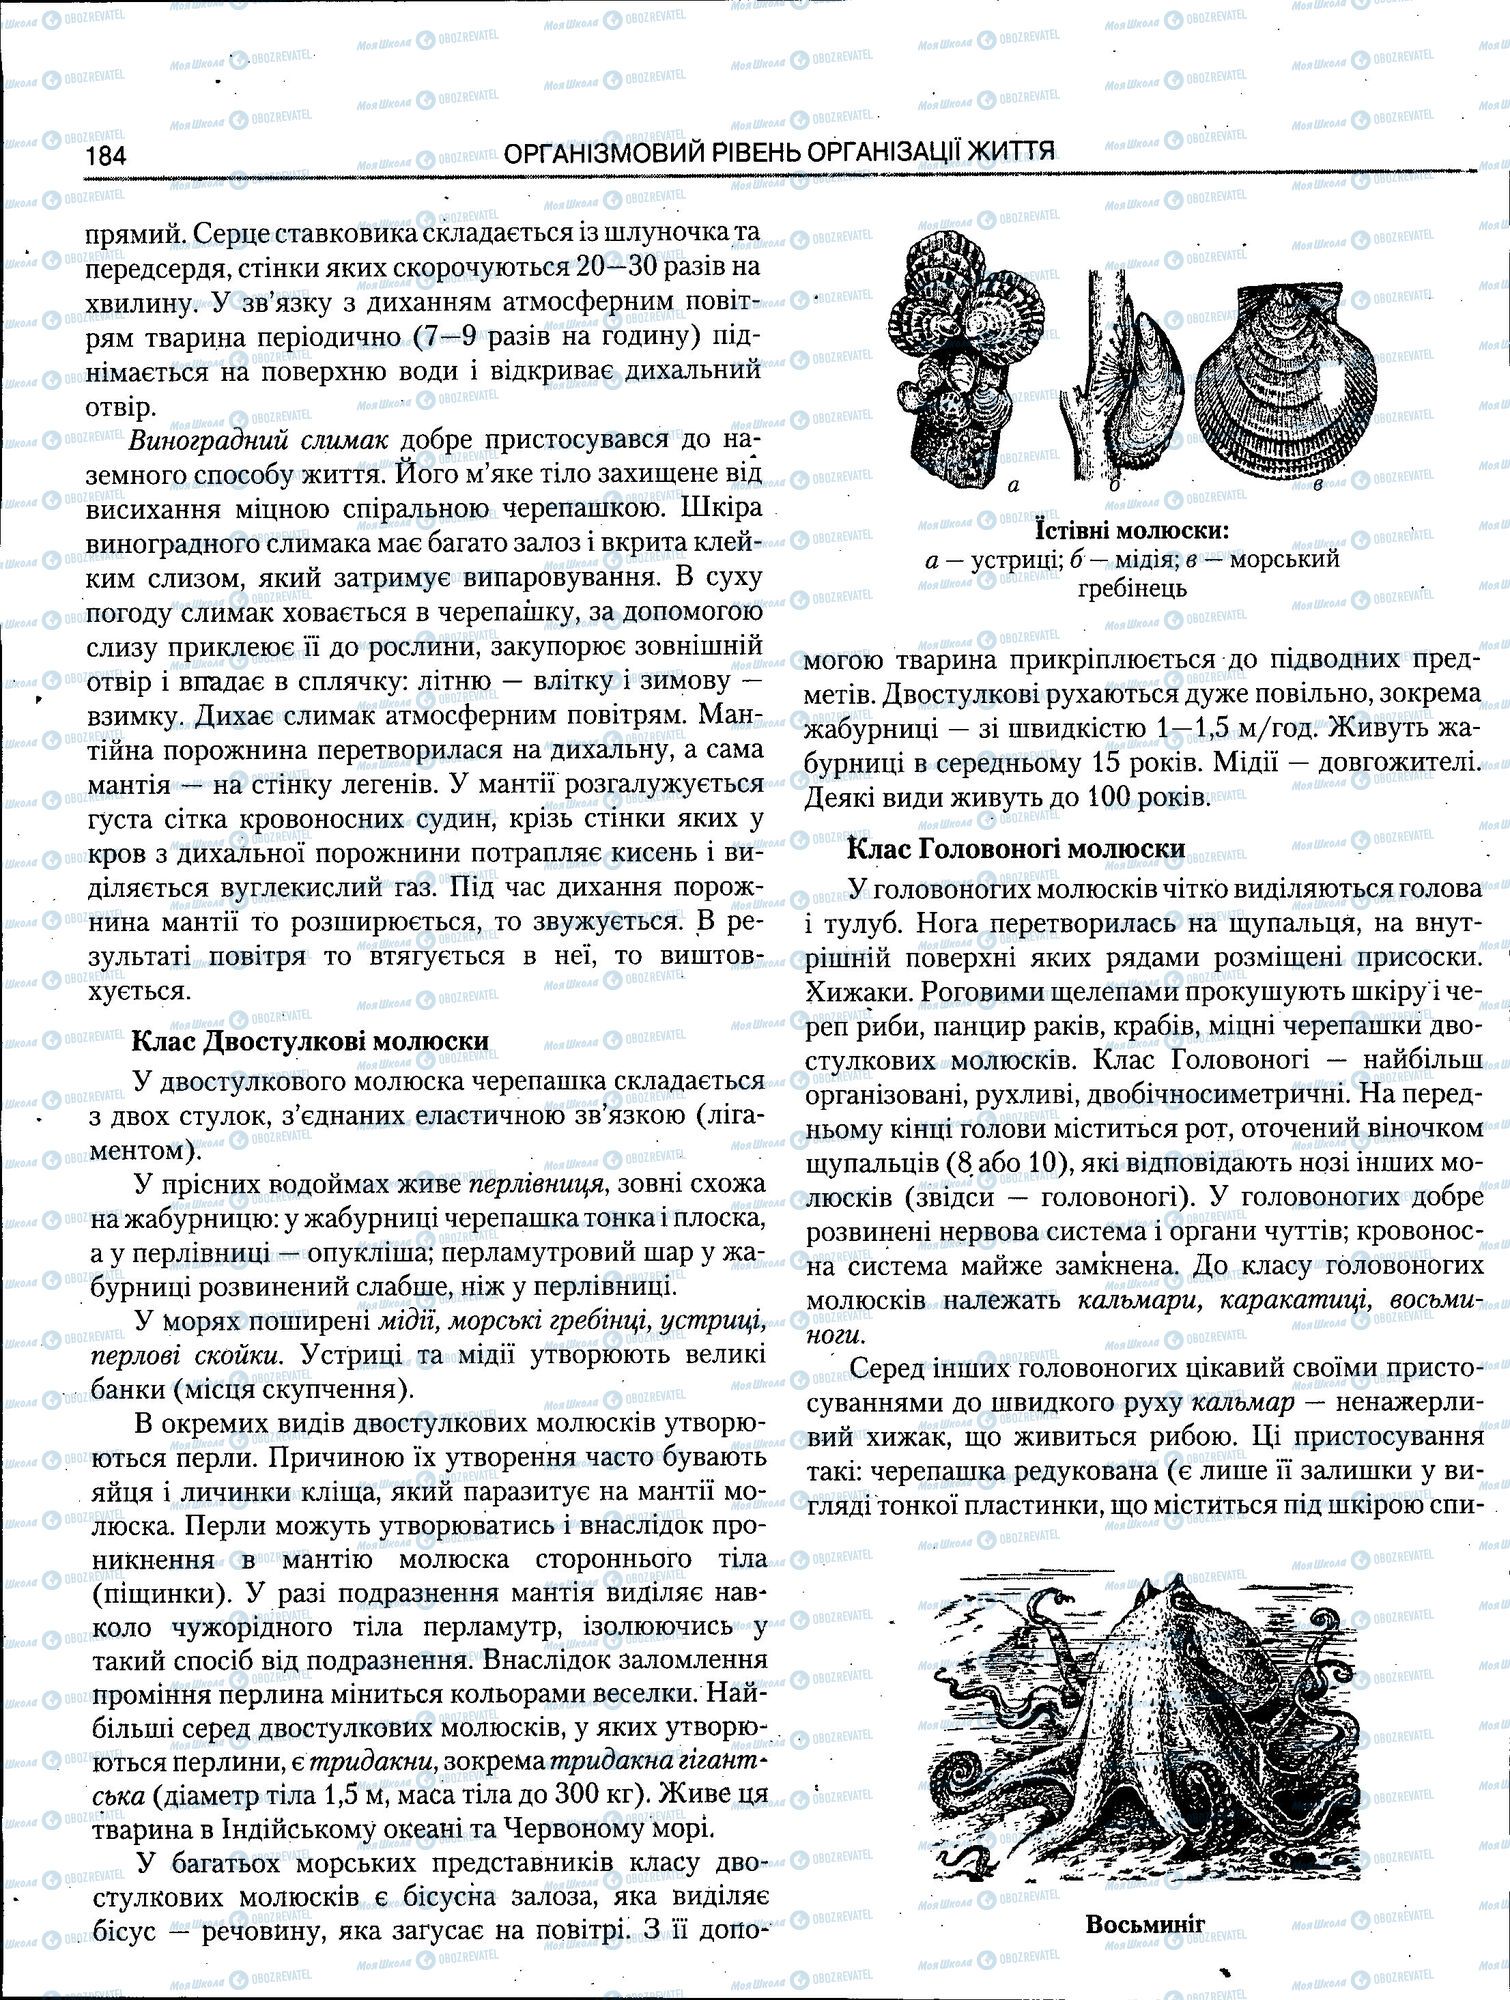 ЗНО Биология 11 класс страница 184